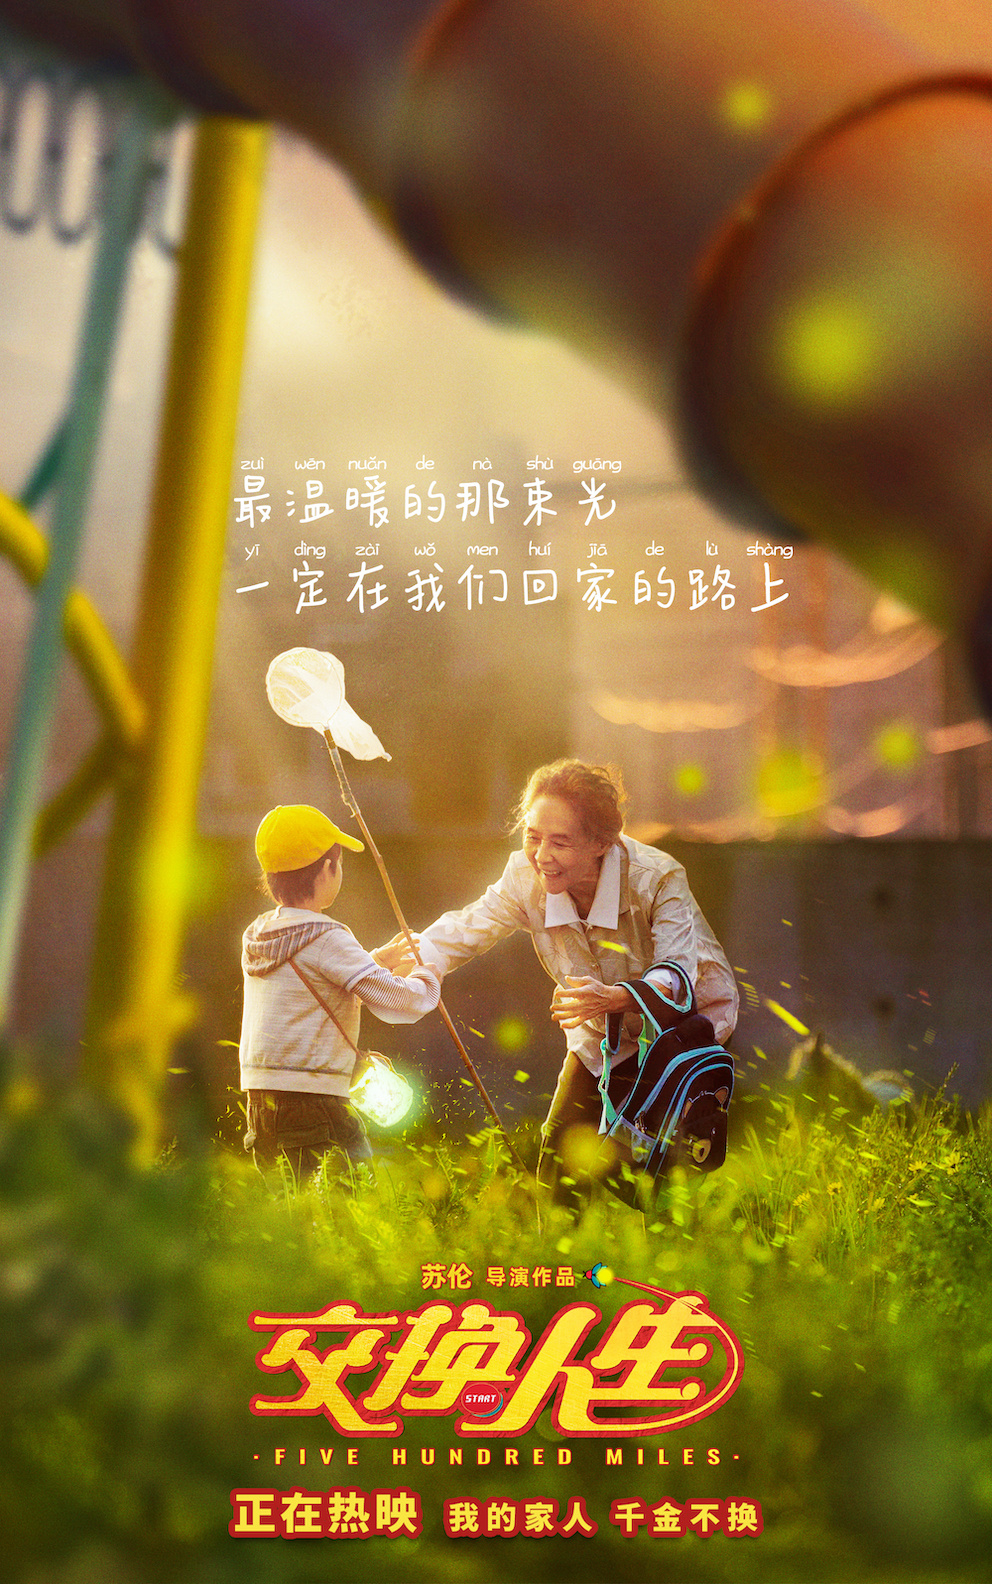  雷佳音和张宥浩正在现场还一同还原了电影中爸爸-山西环境视频-